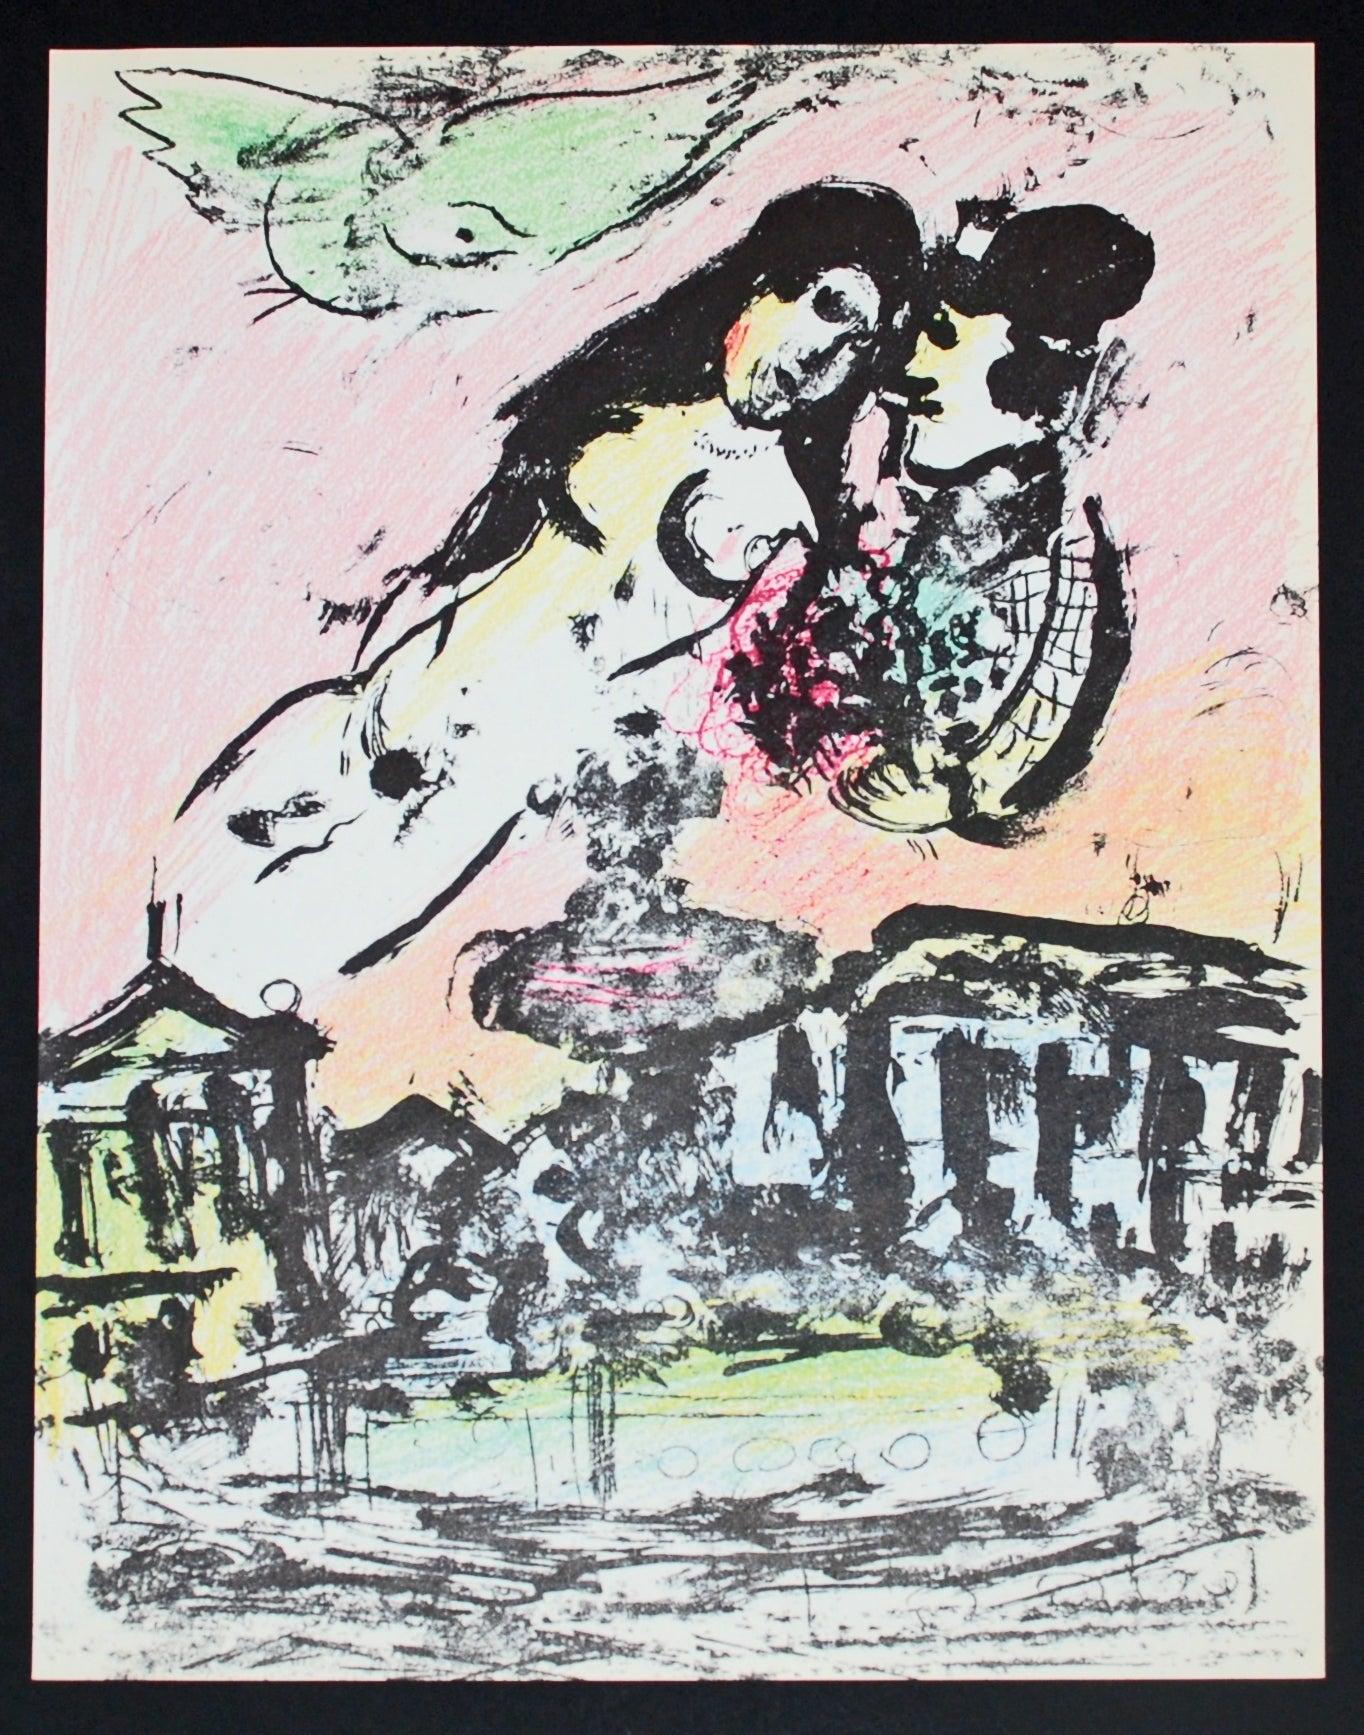 Künstler: Marc Chagall
Titel: Der Himmel der Liebenden
Mappe: Mourlot Lithographe II
Medium: Lithographie
Datum: 1963
Auflage: Unnumeriert
Rahmengröße: 20 1/2